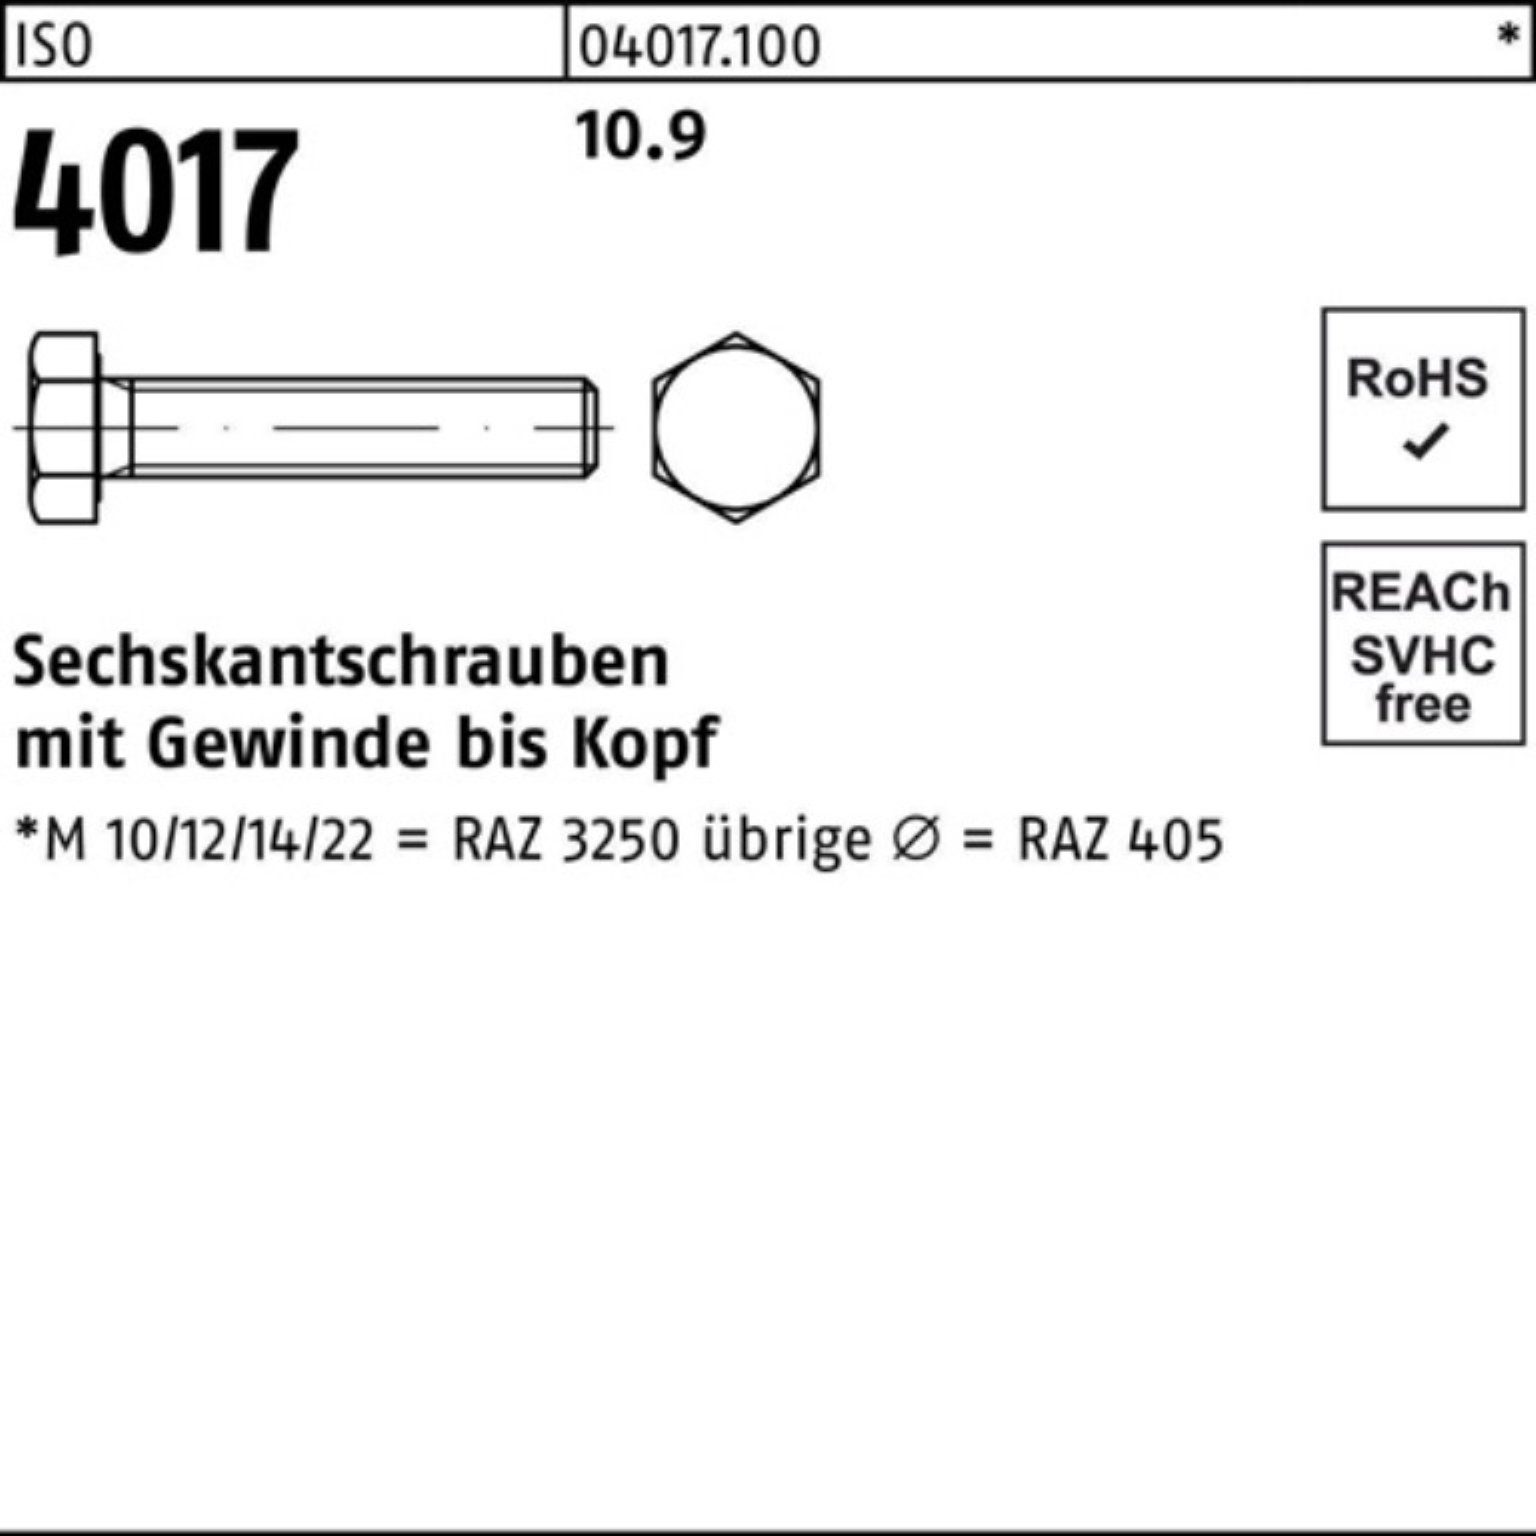 401 ISO Sechskantschraube Sechskantschraube Bufab 10.9 Pack VG 4017 Stück 1 ISO 100er 50 M36x